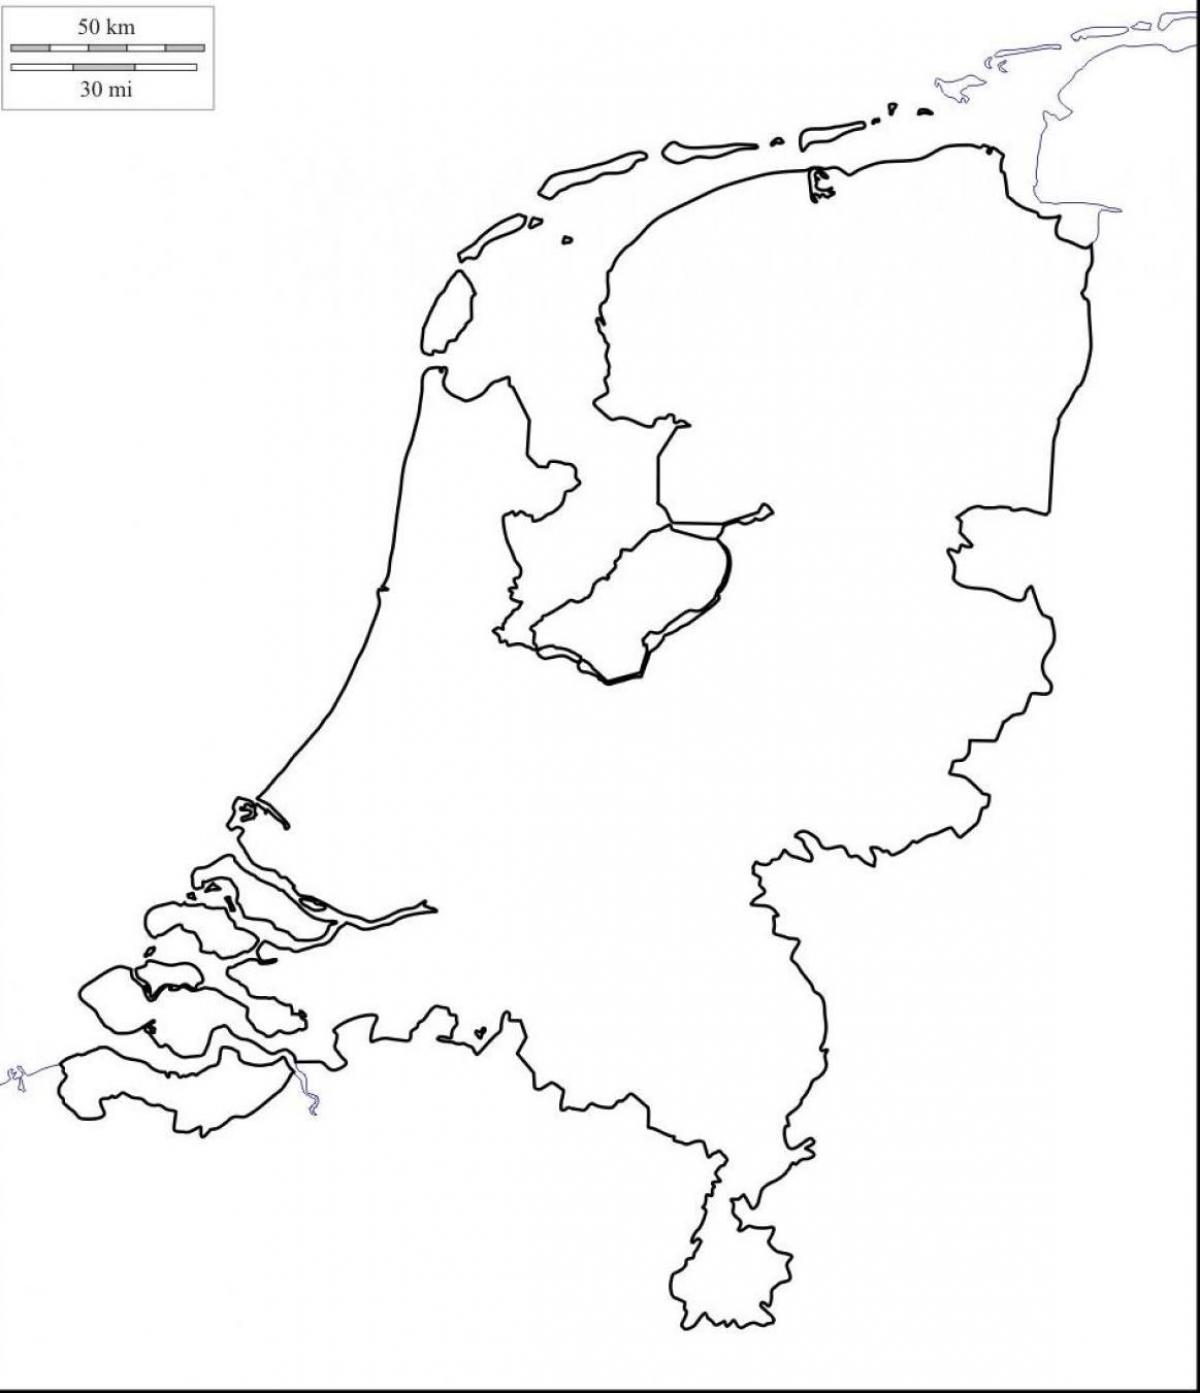 Mapa de los Países Bajos vacío